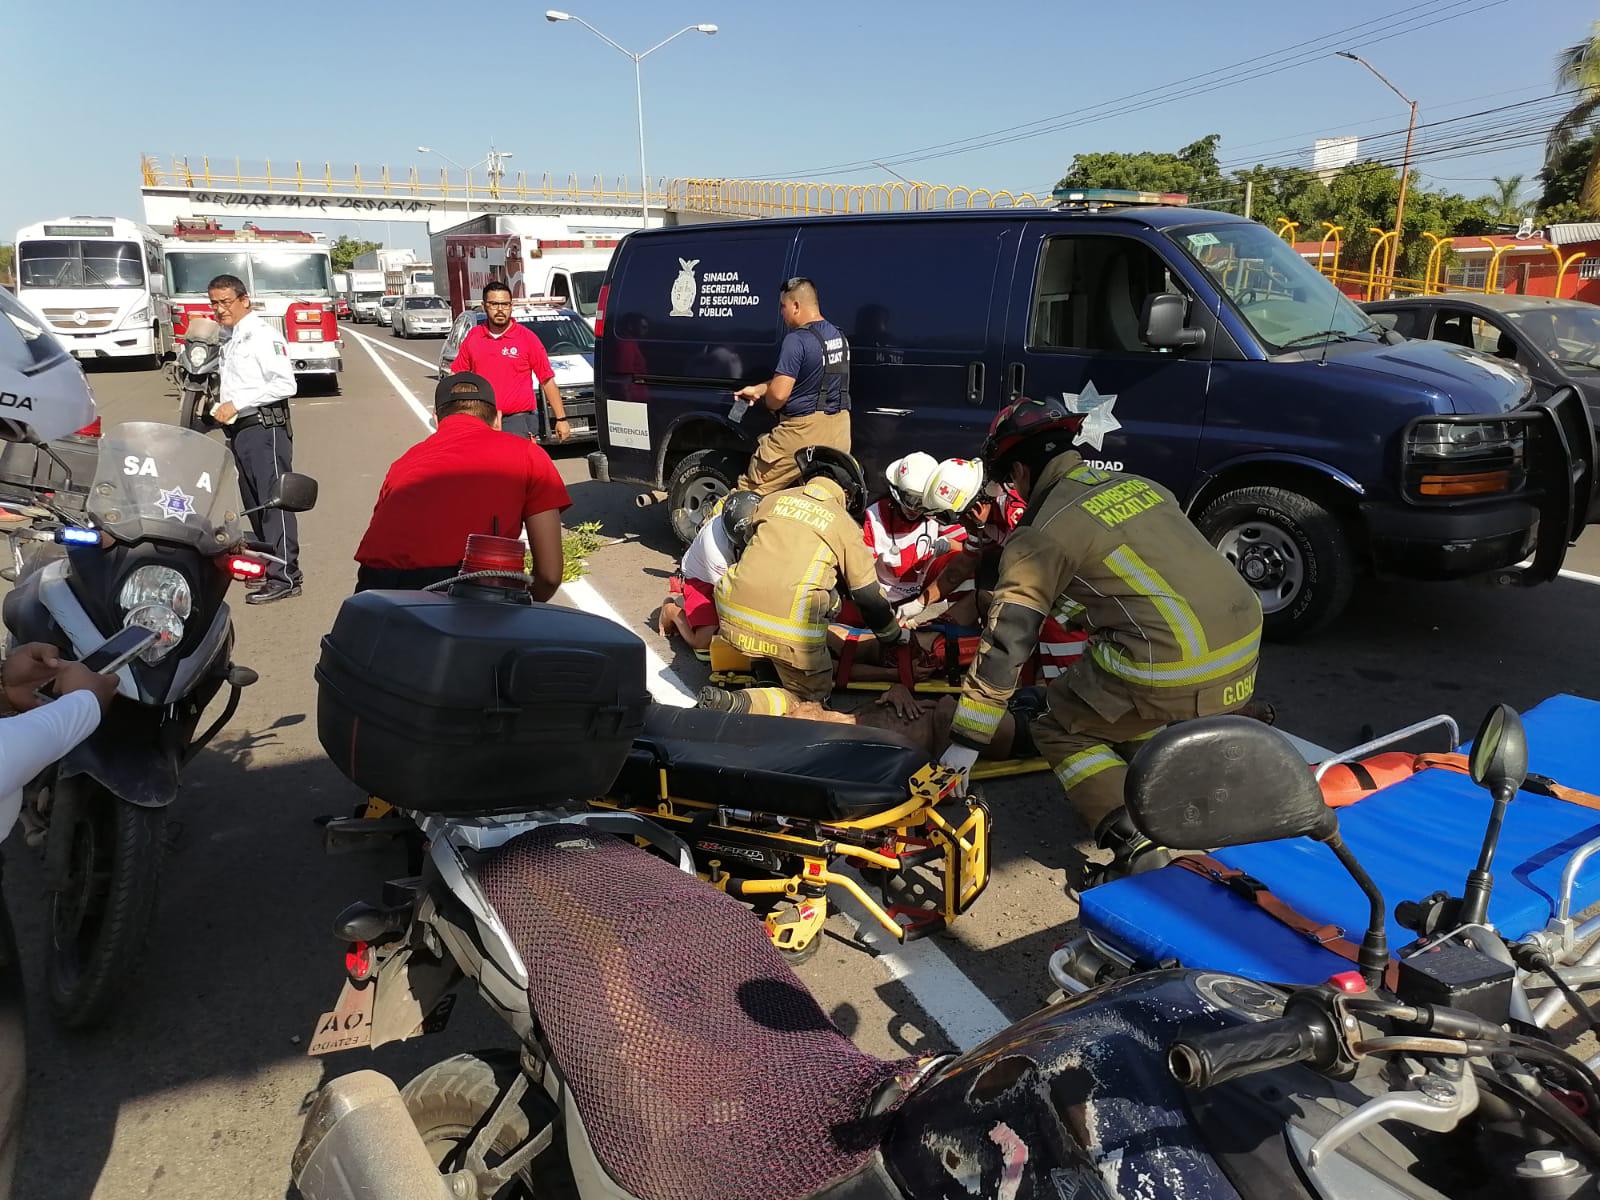 $!Dos lesionados graves tras choque de camioneta en Mazatlán